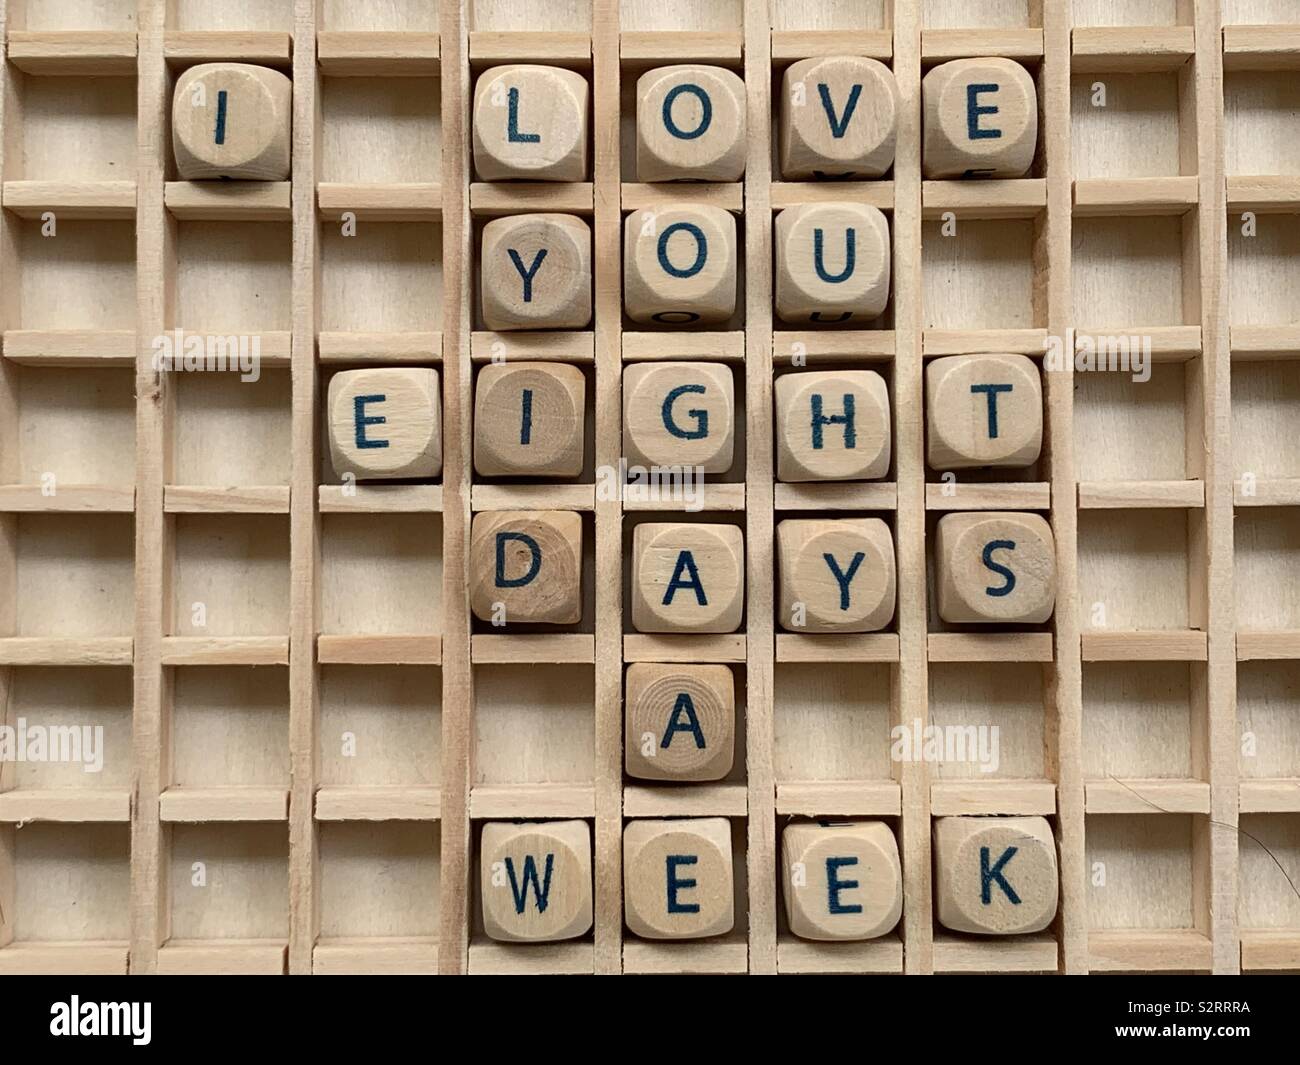 I love you 8 días a la semana, declaración compuesta con cubo de madera dados cartas Foto de stock